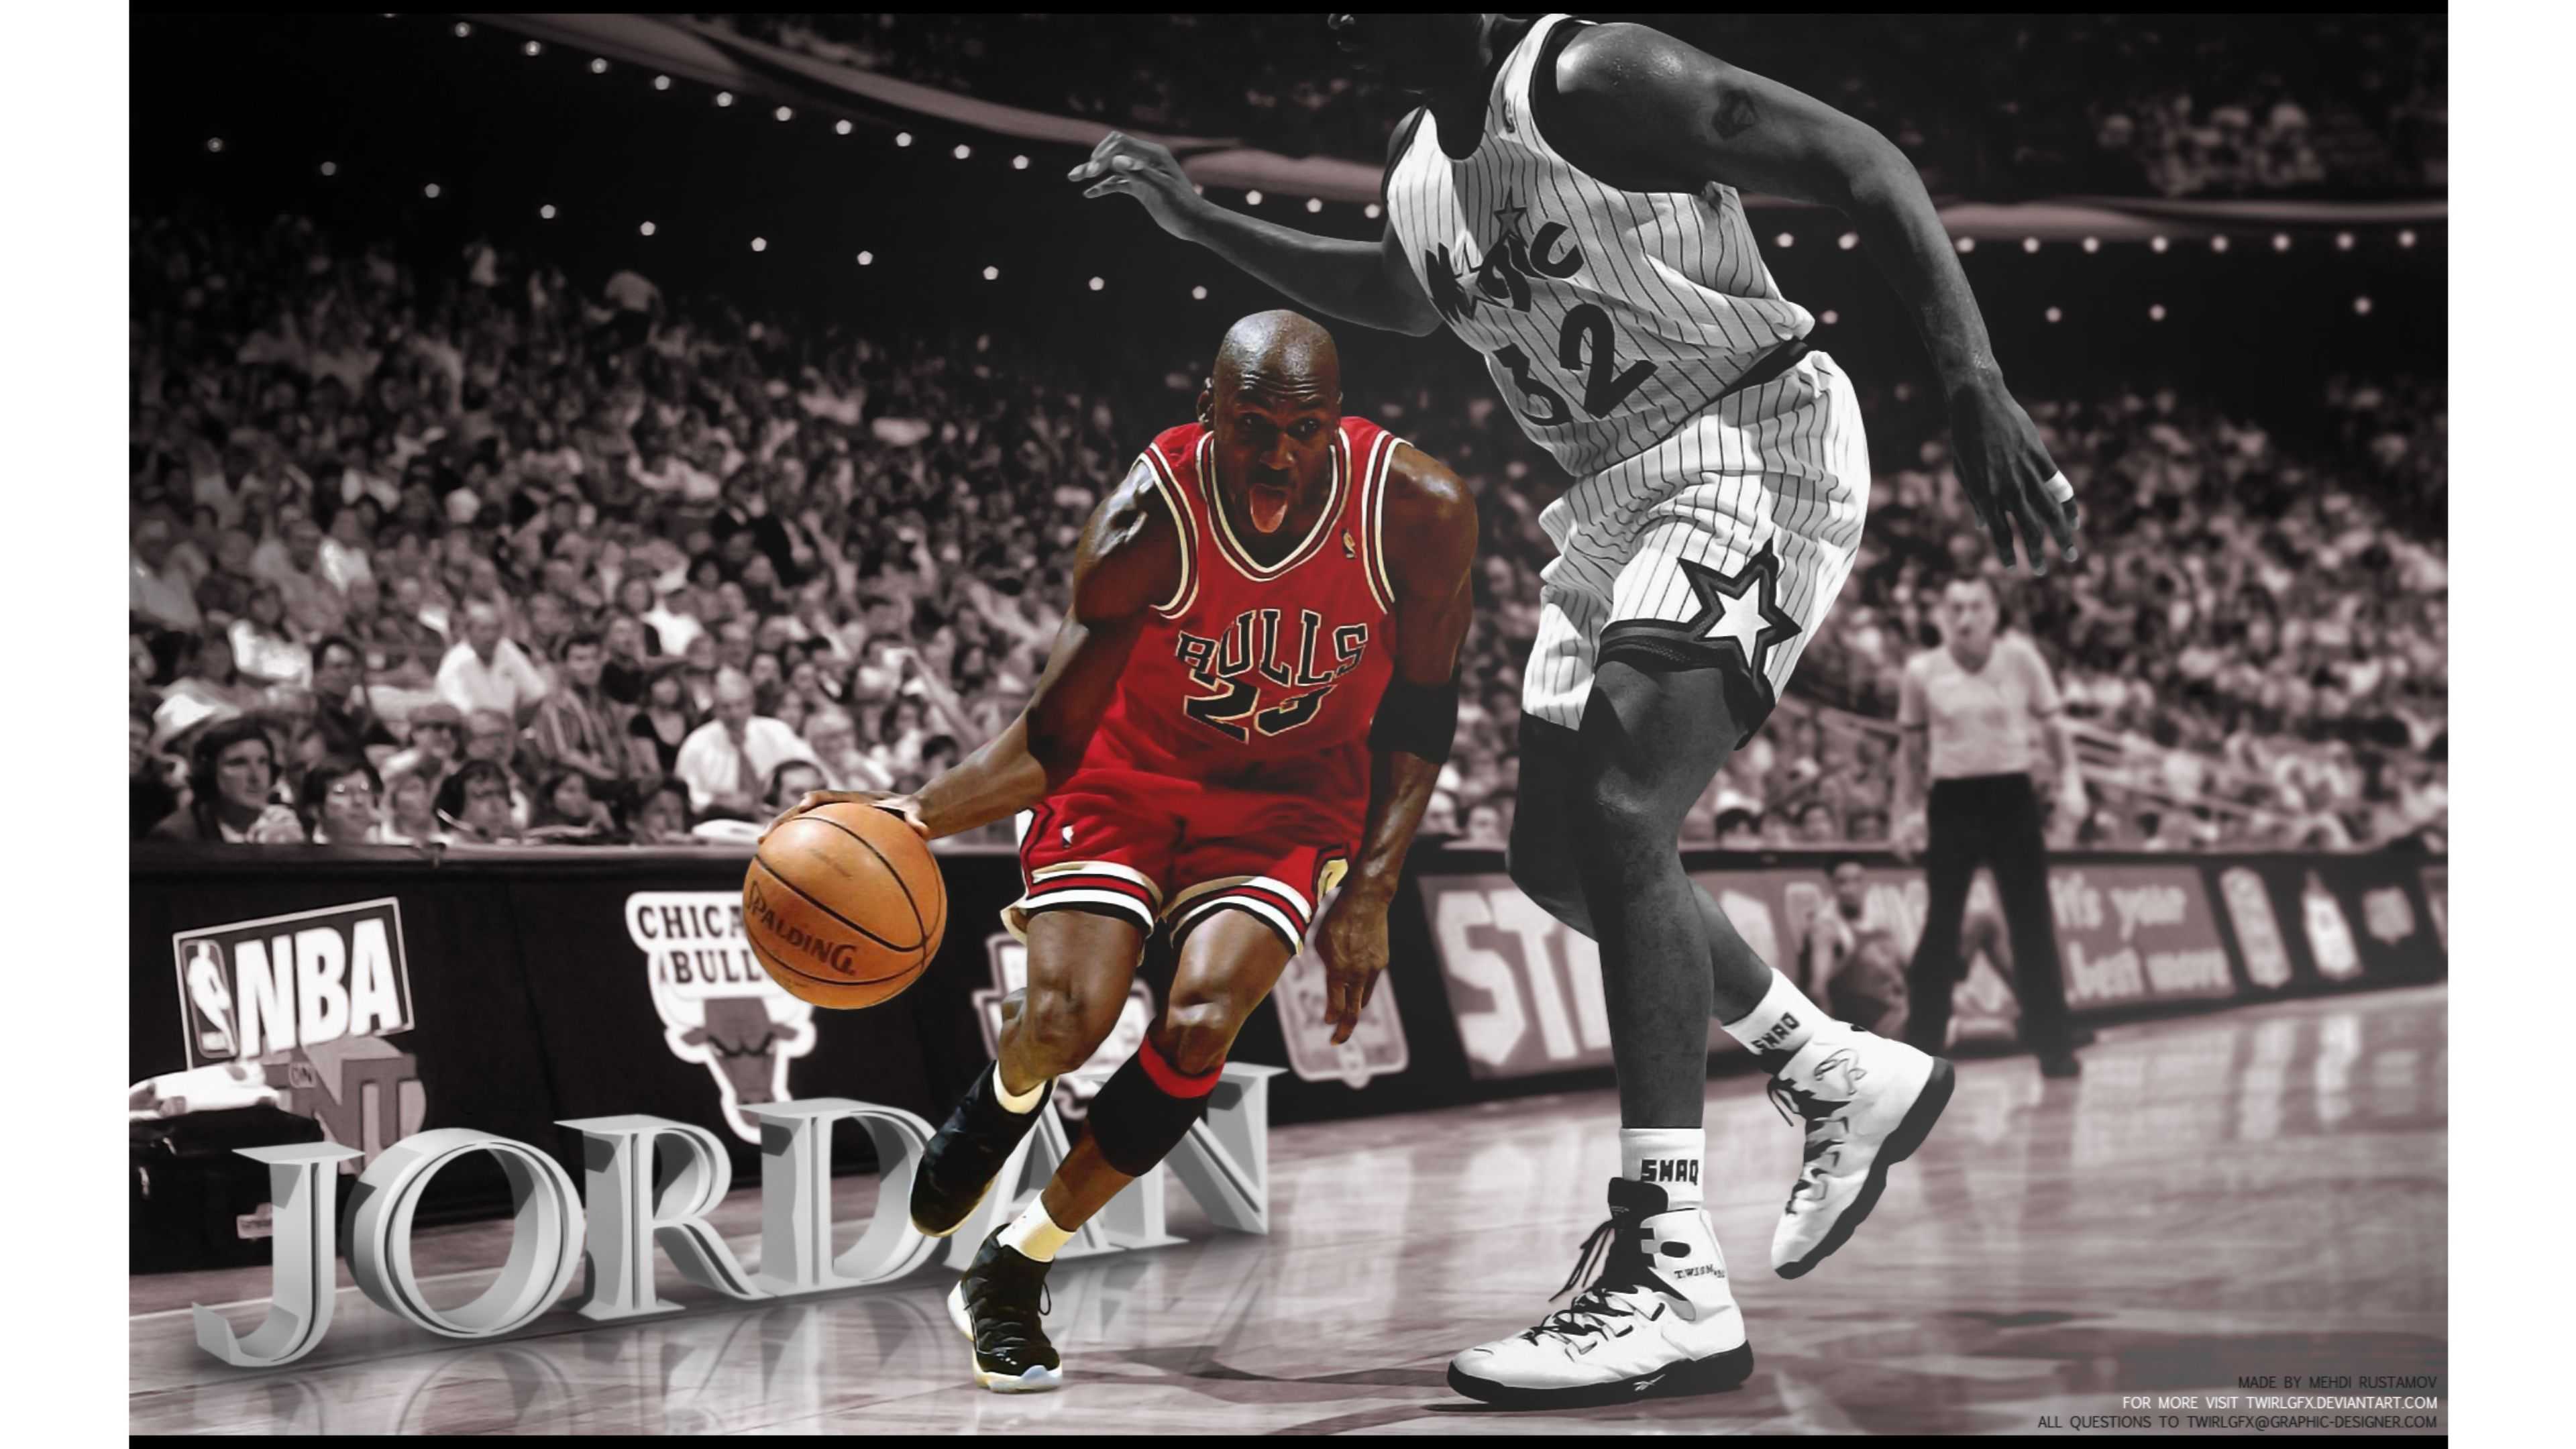 Michael Jordan Wallpaper Full HD Image Of Mobile Phones Vintage